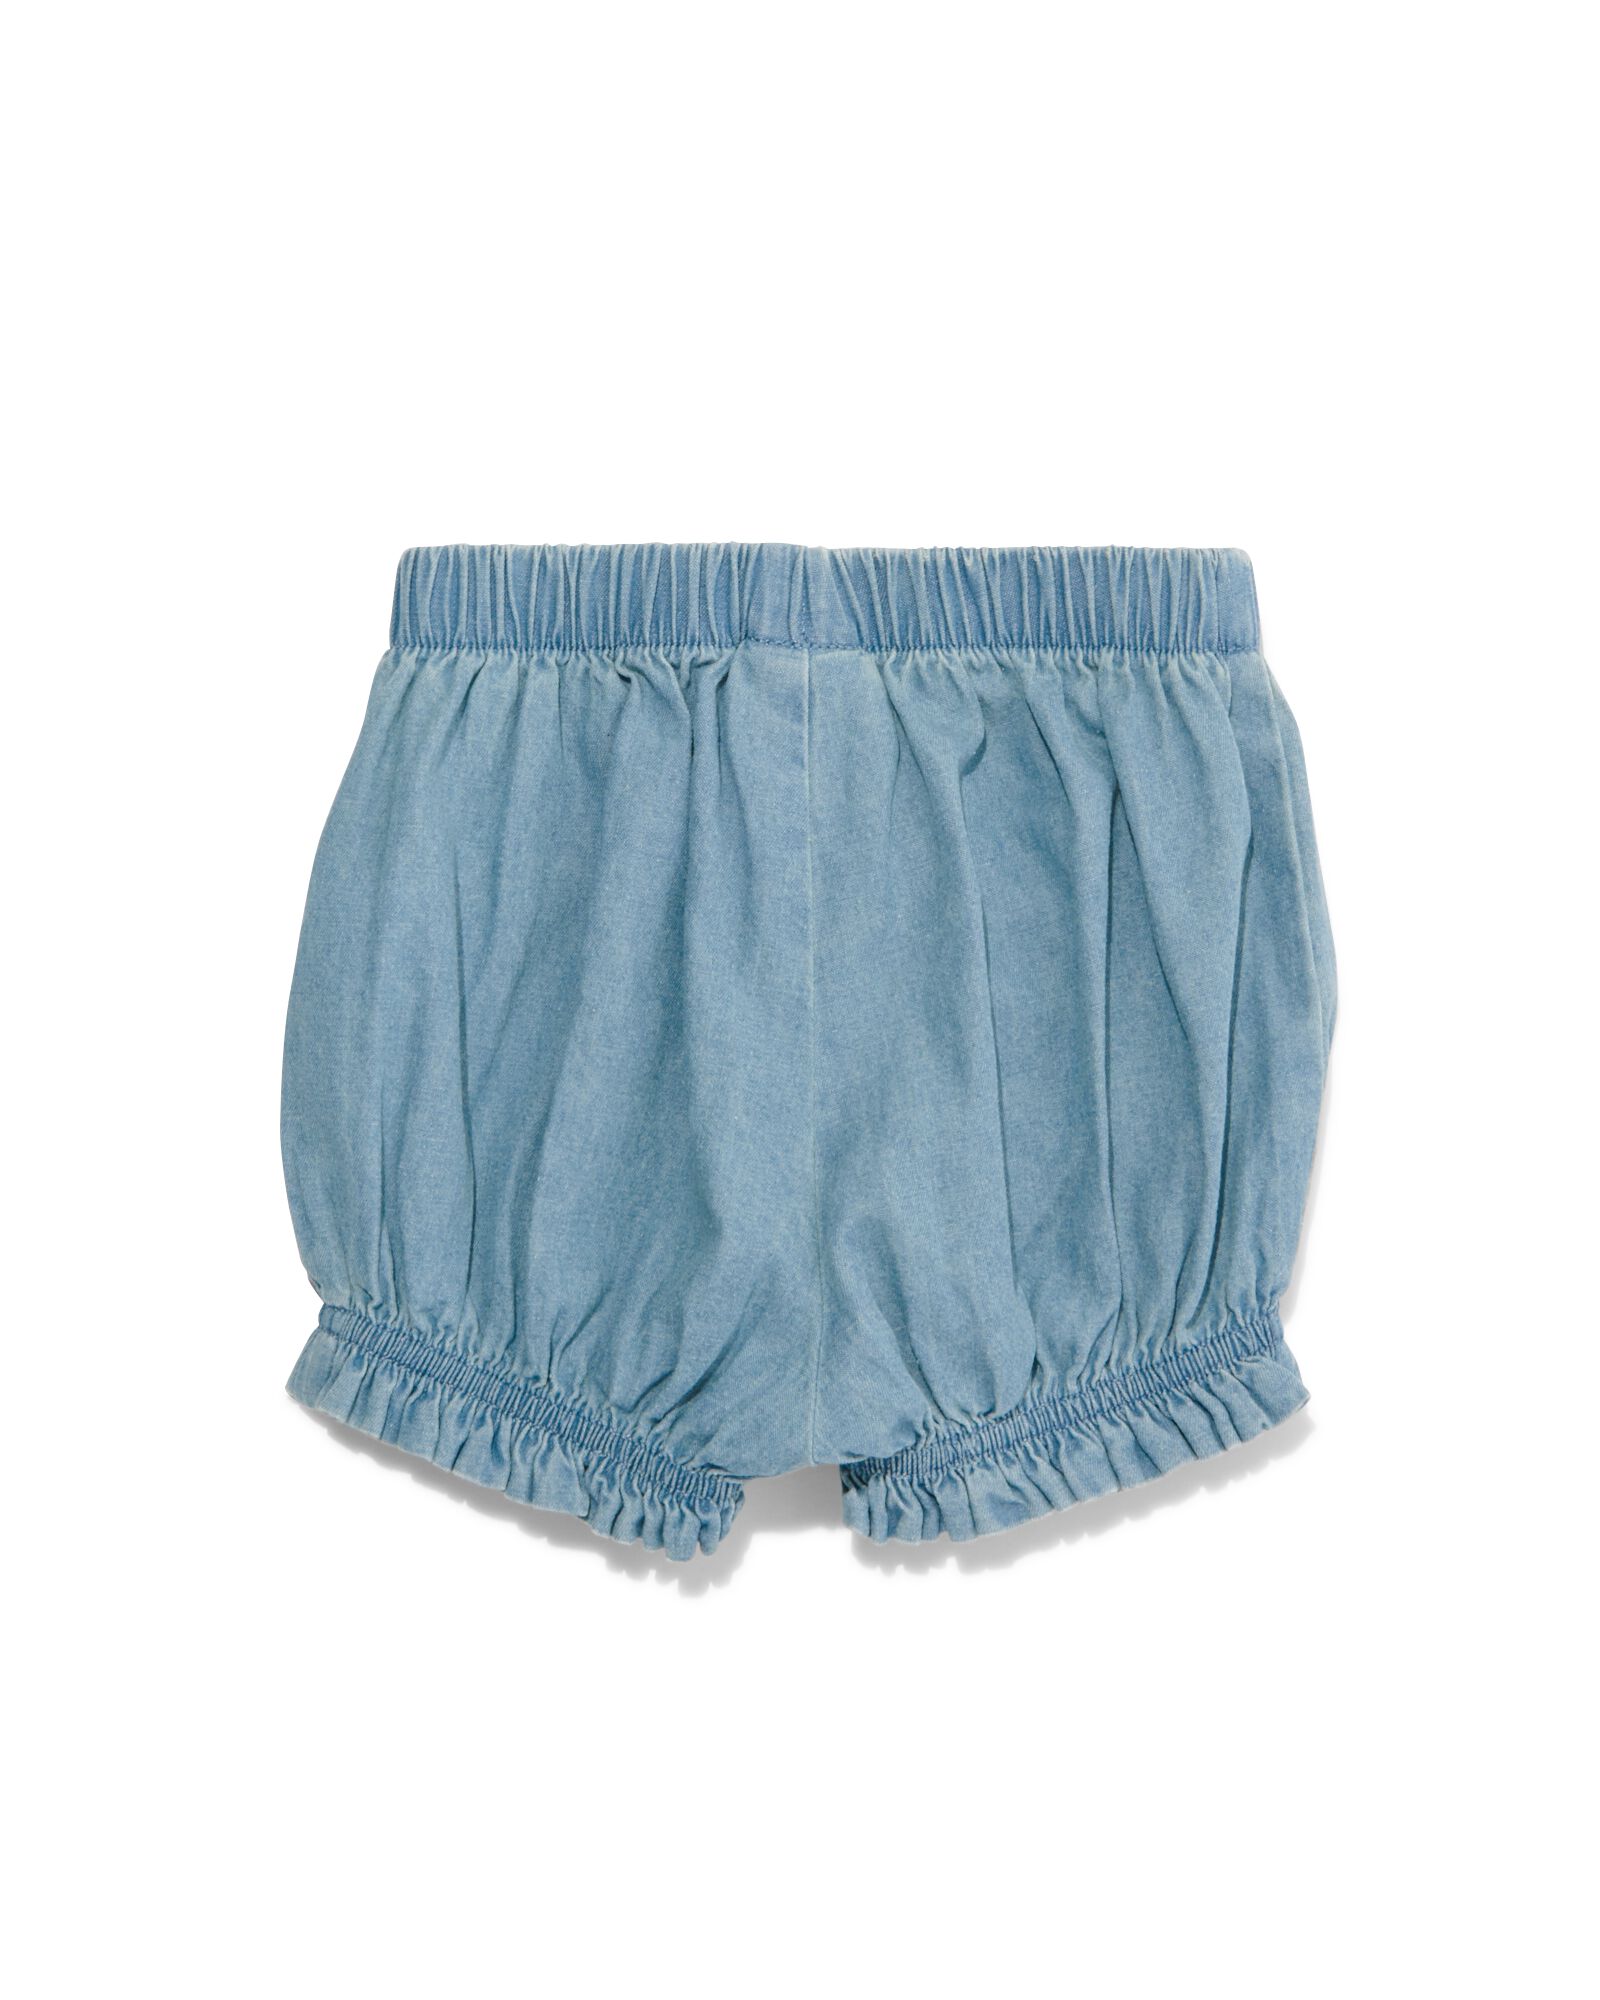 baby shorts denim blauw - 1000030979 - HEMA